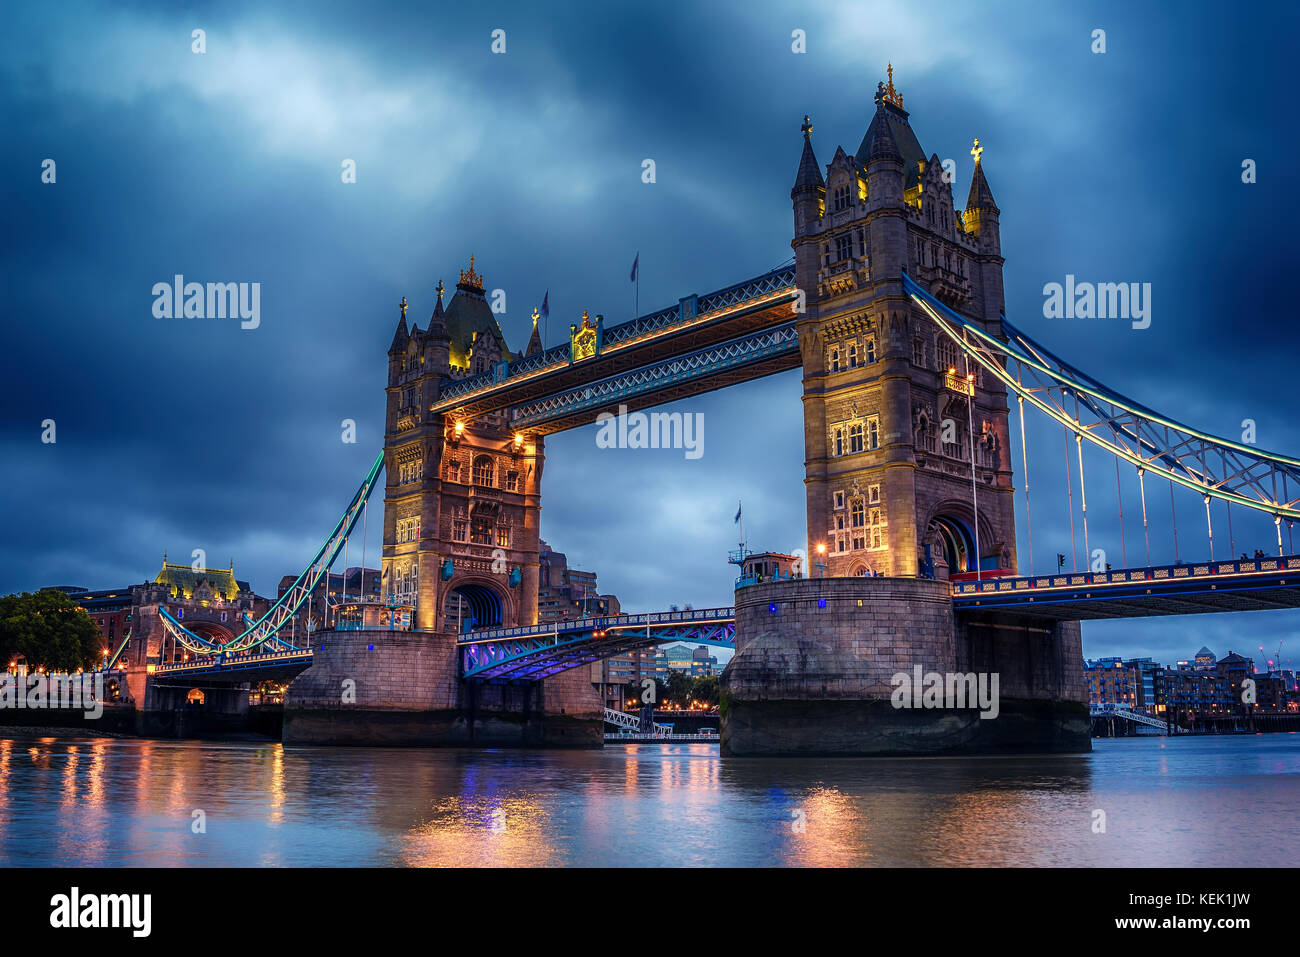 Londres, Royaume-Uni : Tower bridge sur la tamise Banque D'Images